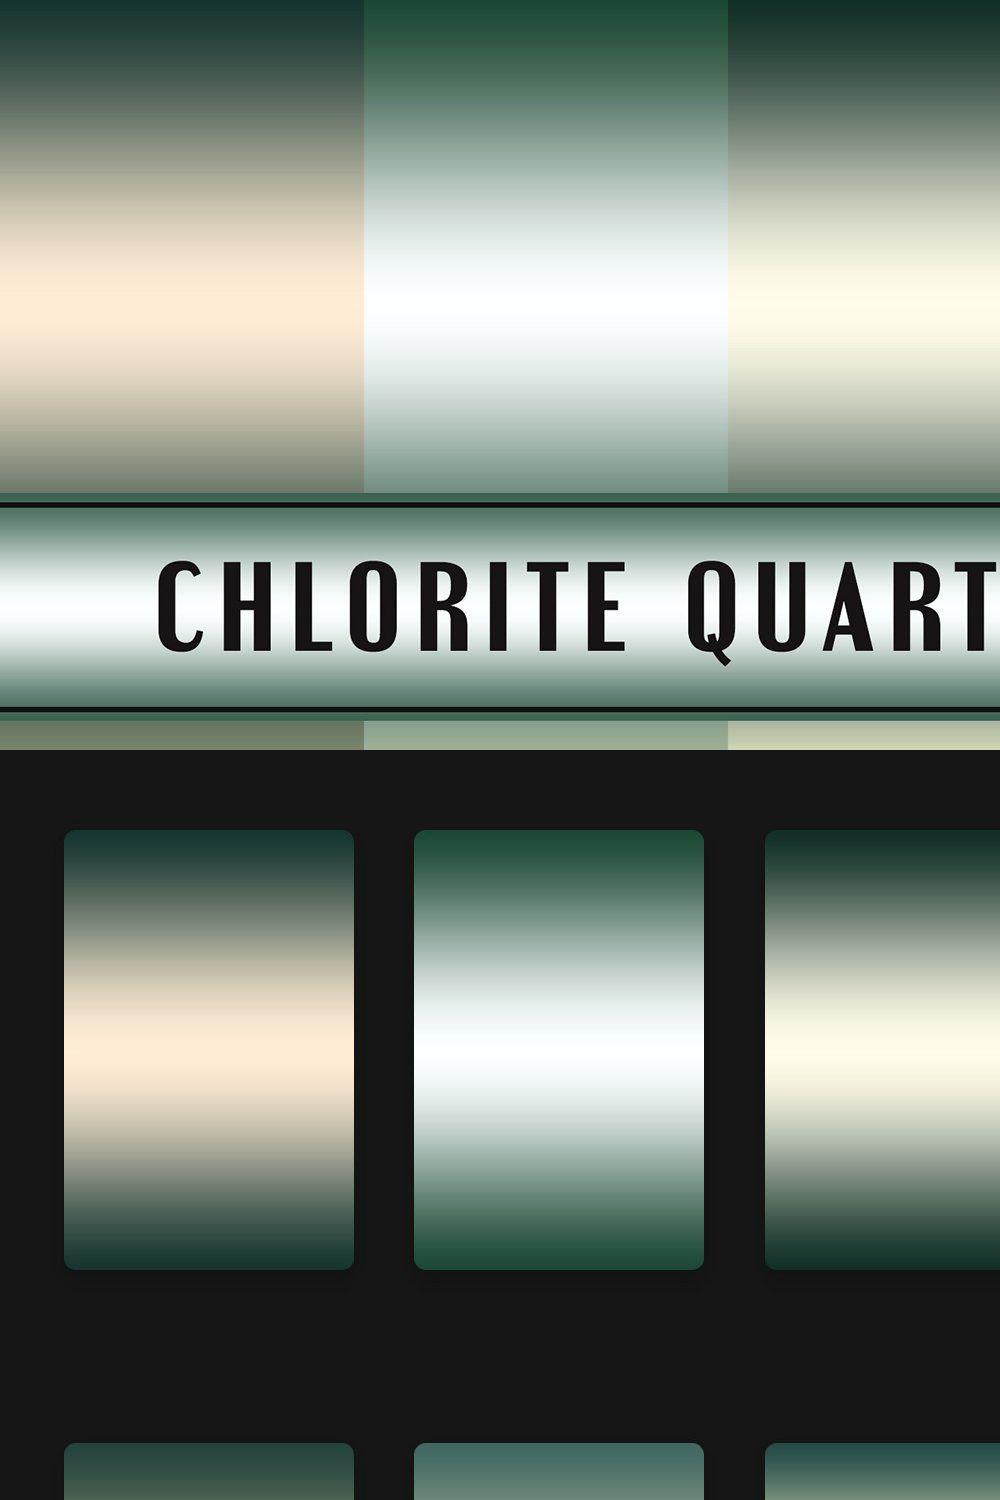 Chlorite Quartz Gradients pinterest preview image.